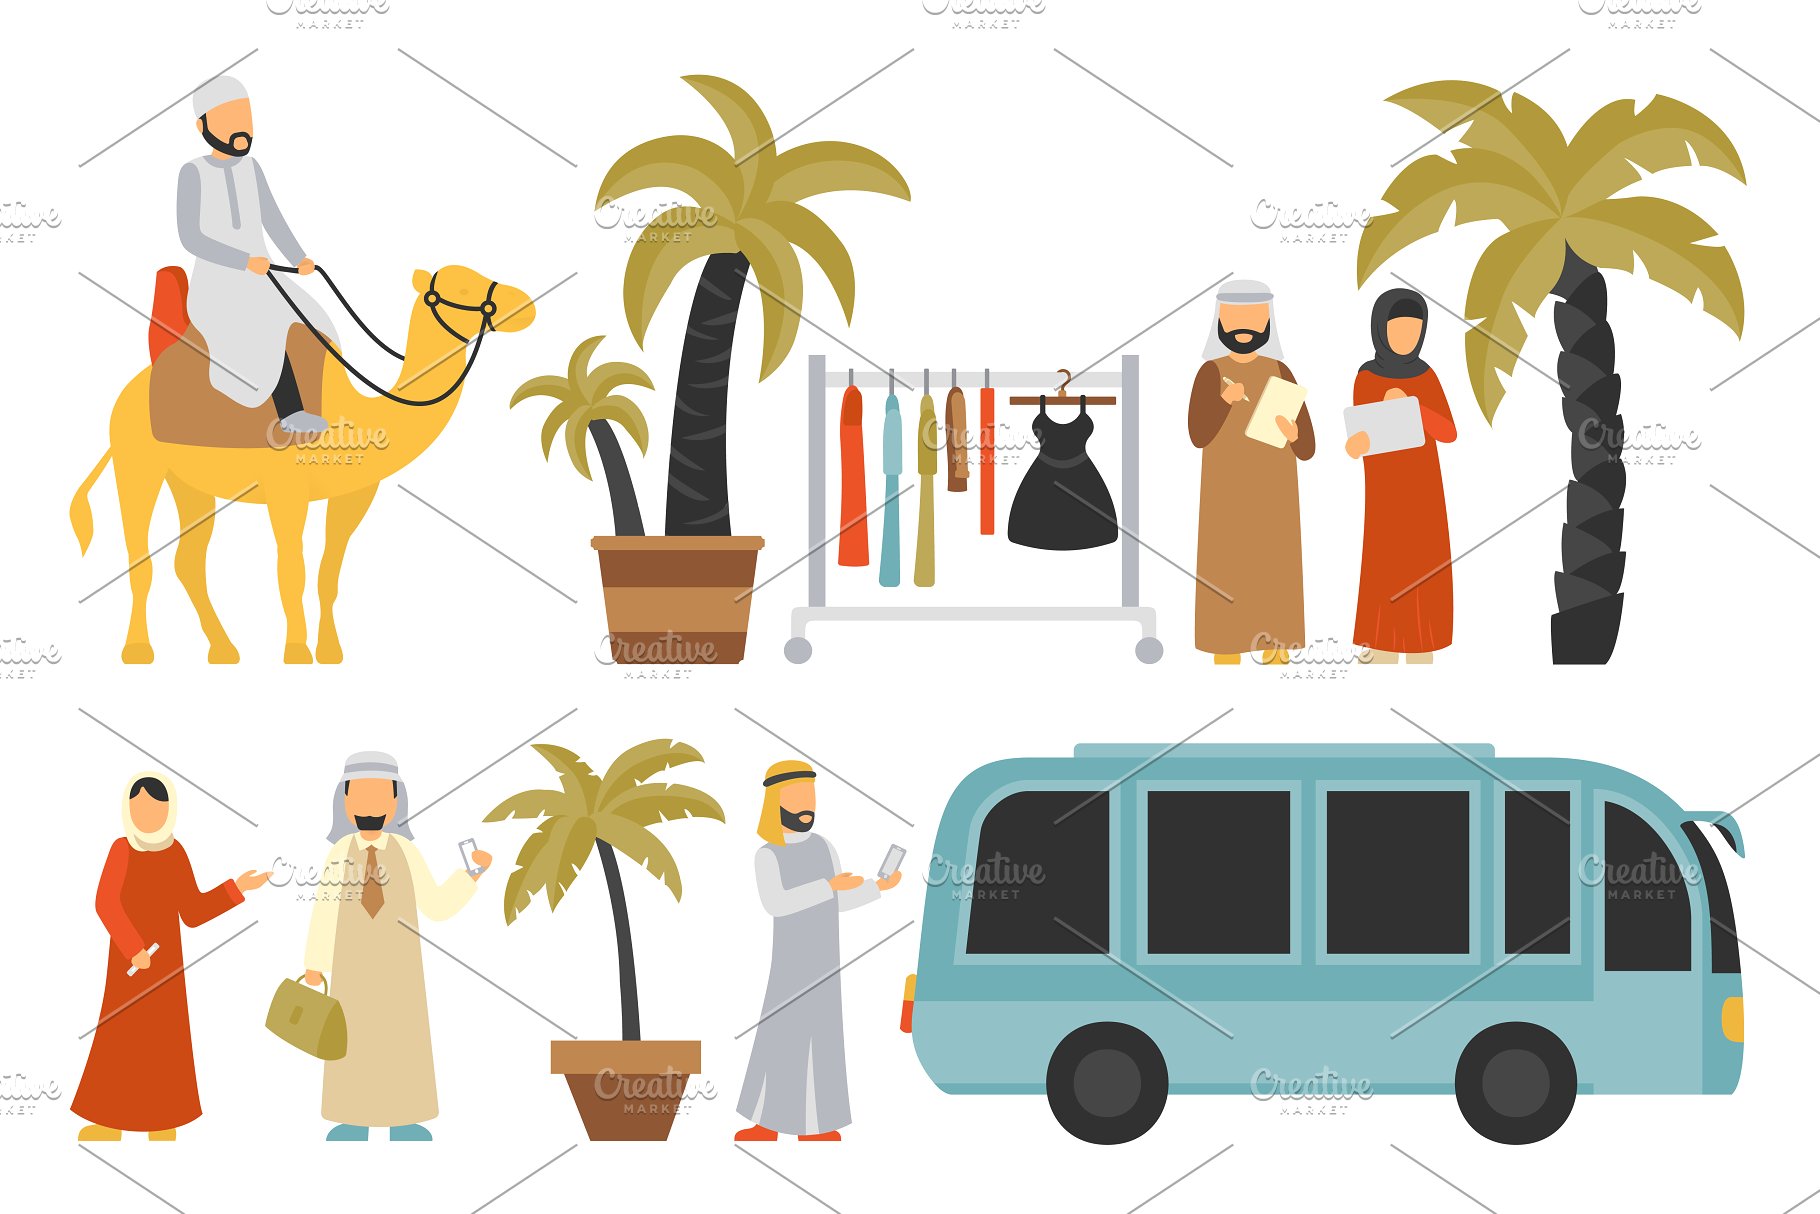 迪拜人物风情扁平化设计插画 Dubai – flat people set插图(16)